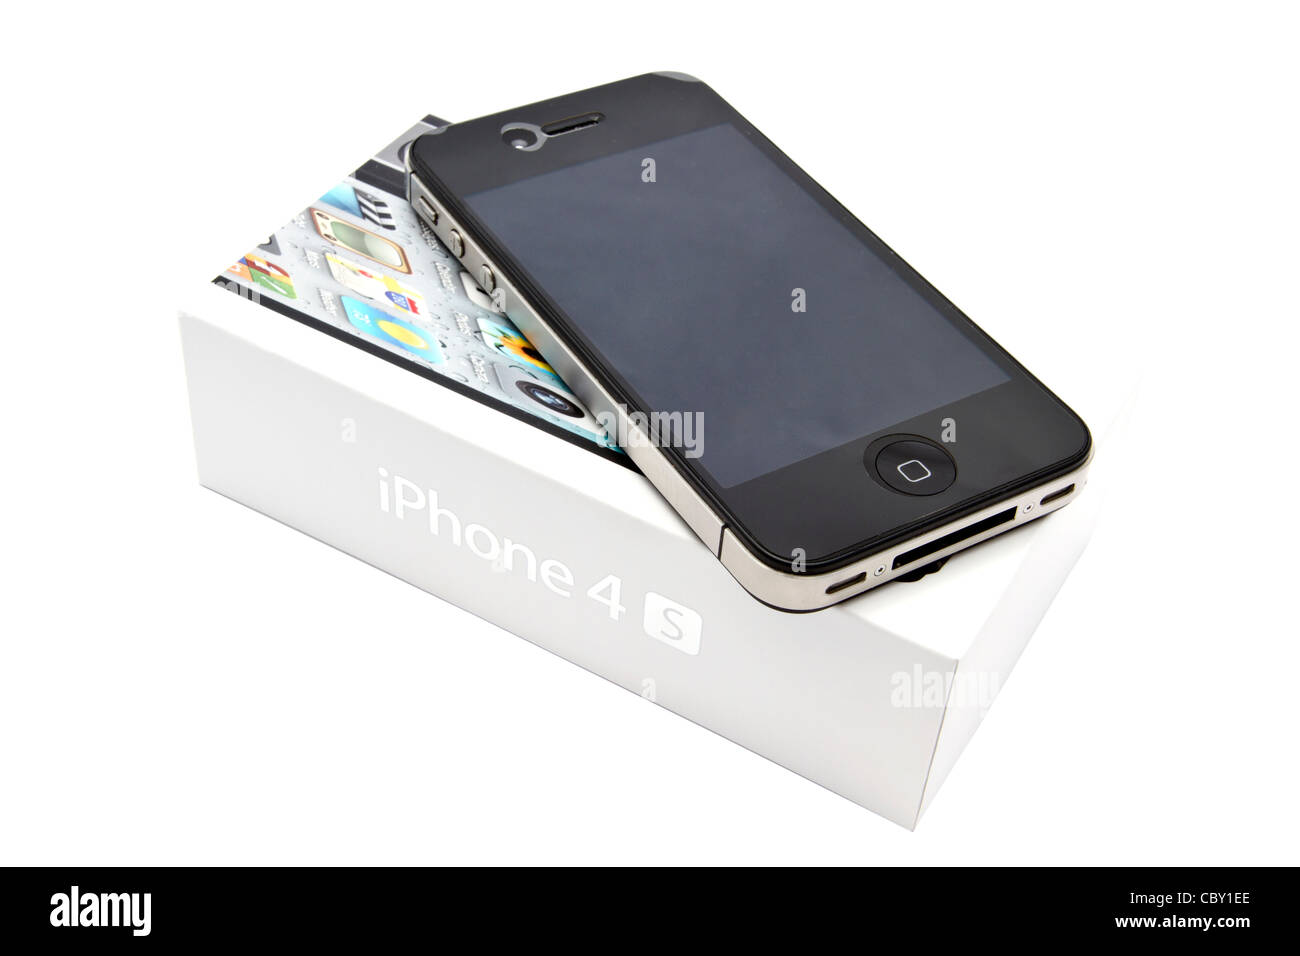 Apple iPhone 4s e la casella closeup su bianco Foto Stock